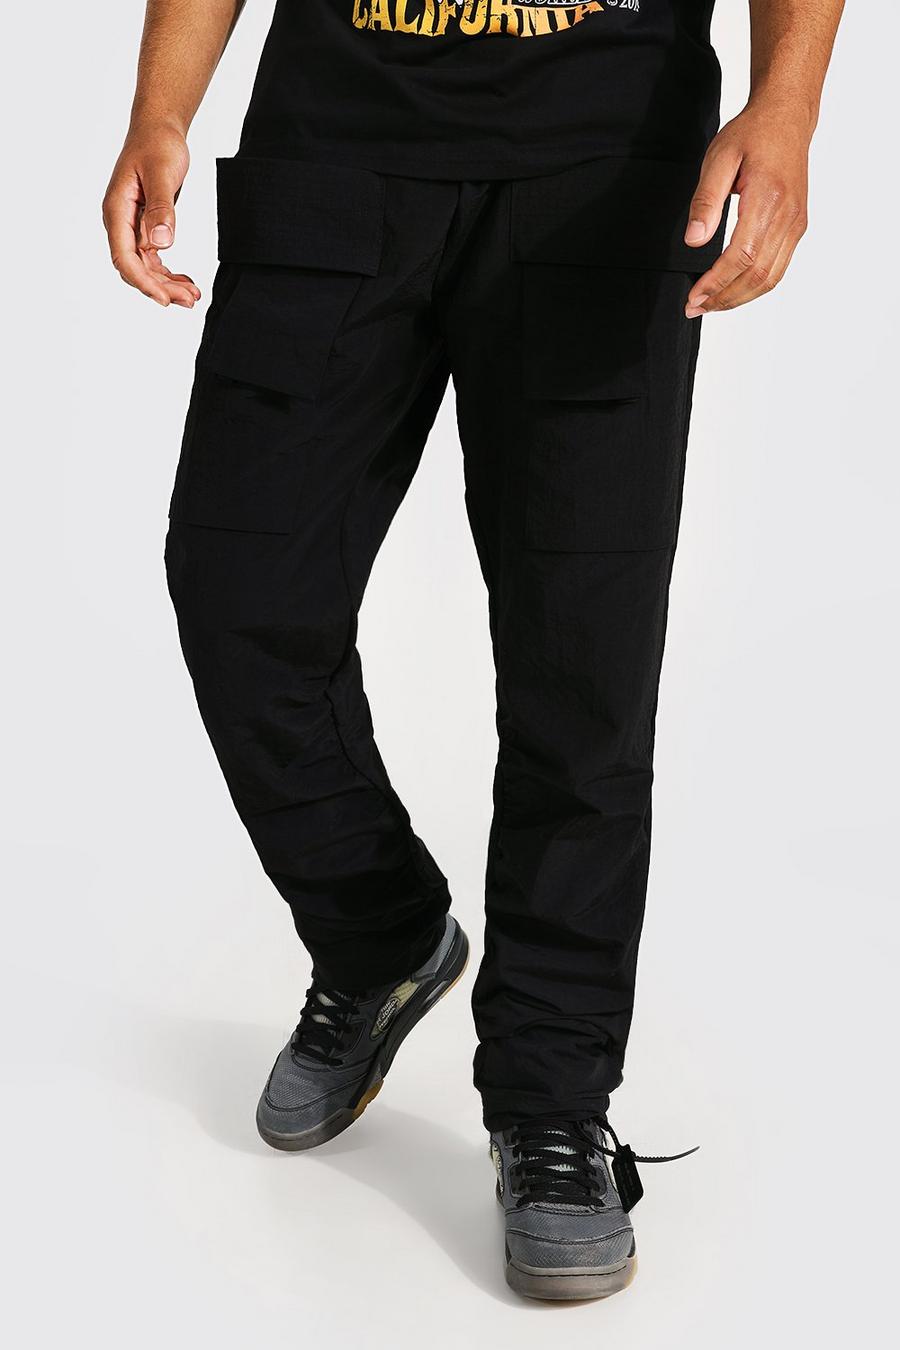 Tall schmale Hose mit Taschen-Detail, Black schwarz